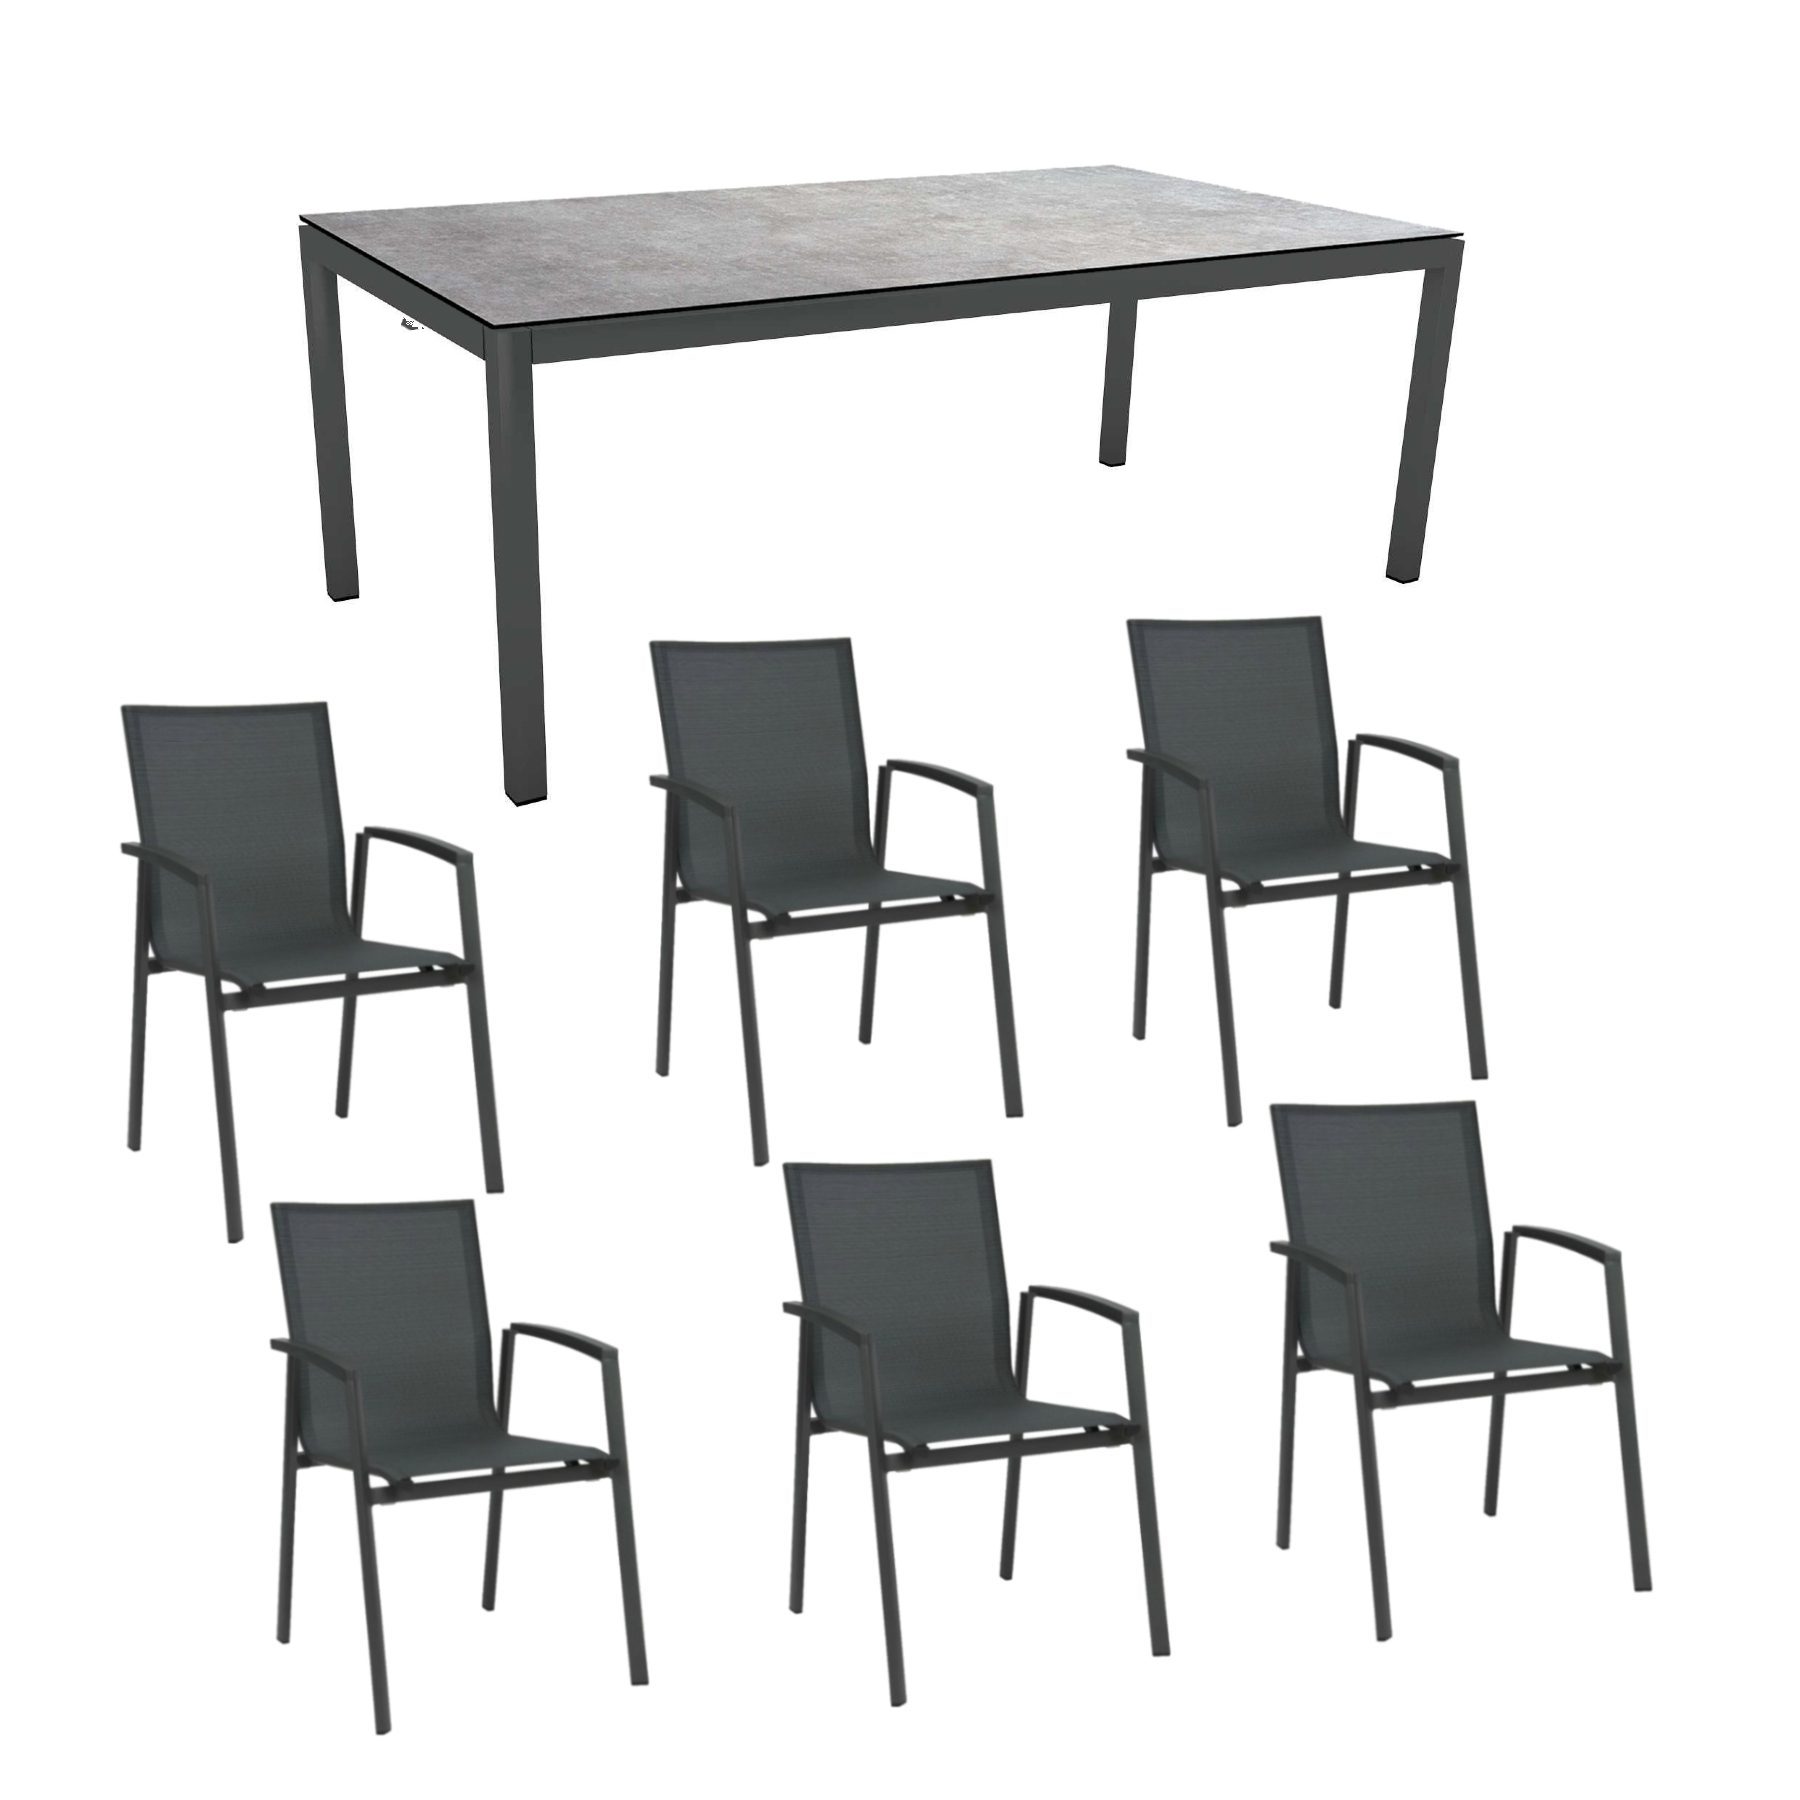 Stern Gartenmöbel-Set "New Top", Gestelle Aluminium anthrazit, Tischplatte Metallic grau, Sitz- und Rückenfläche Textilgewebe karbon